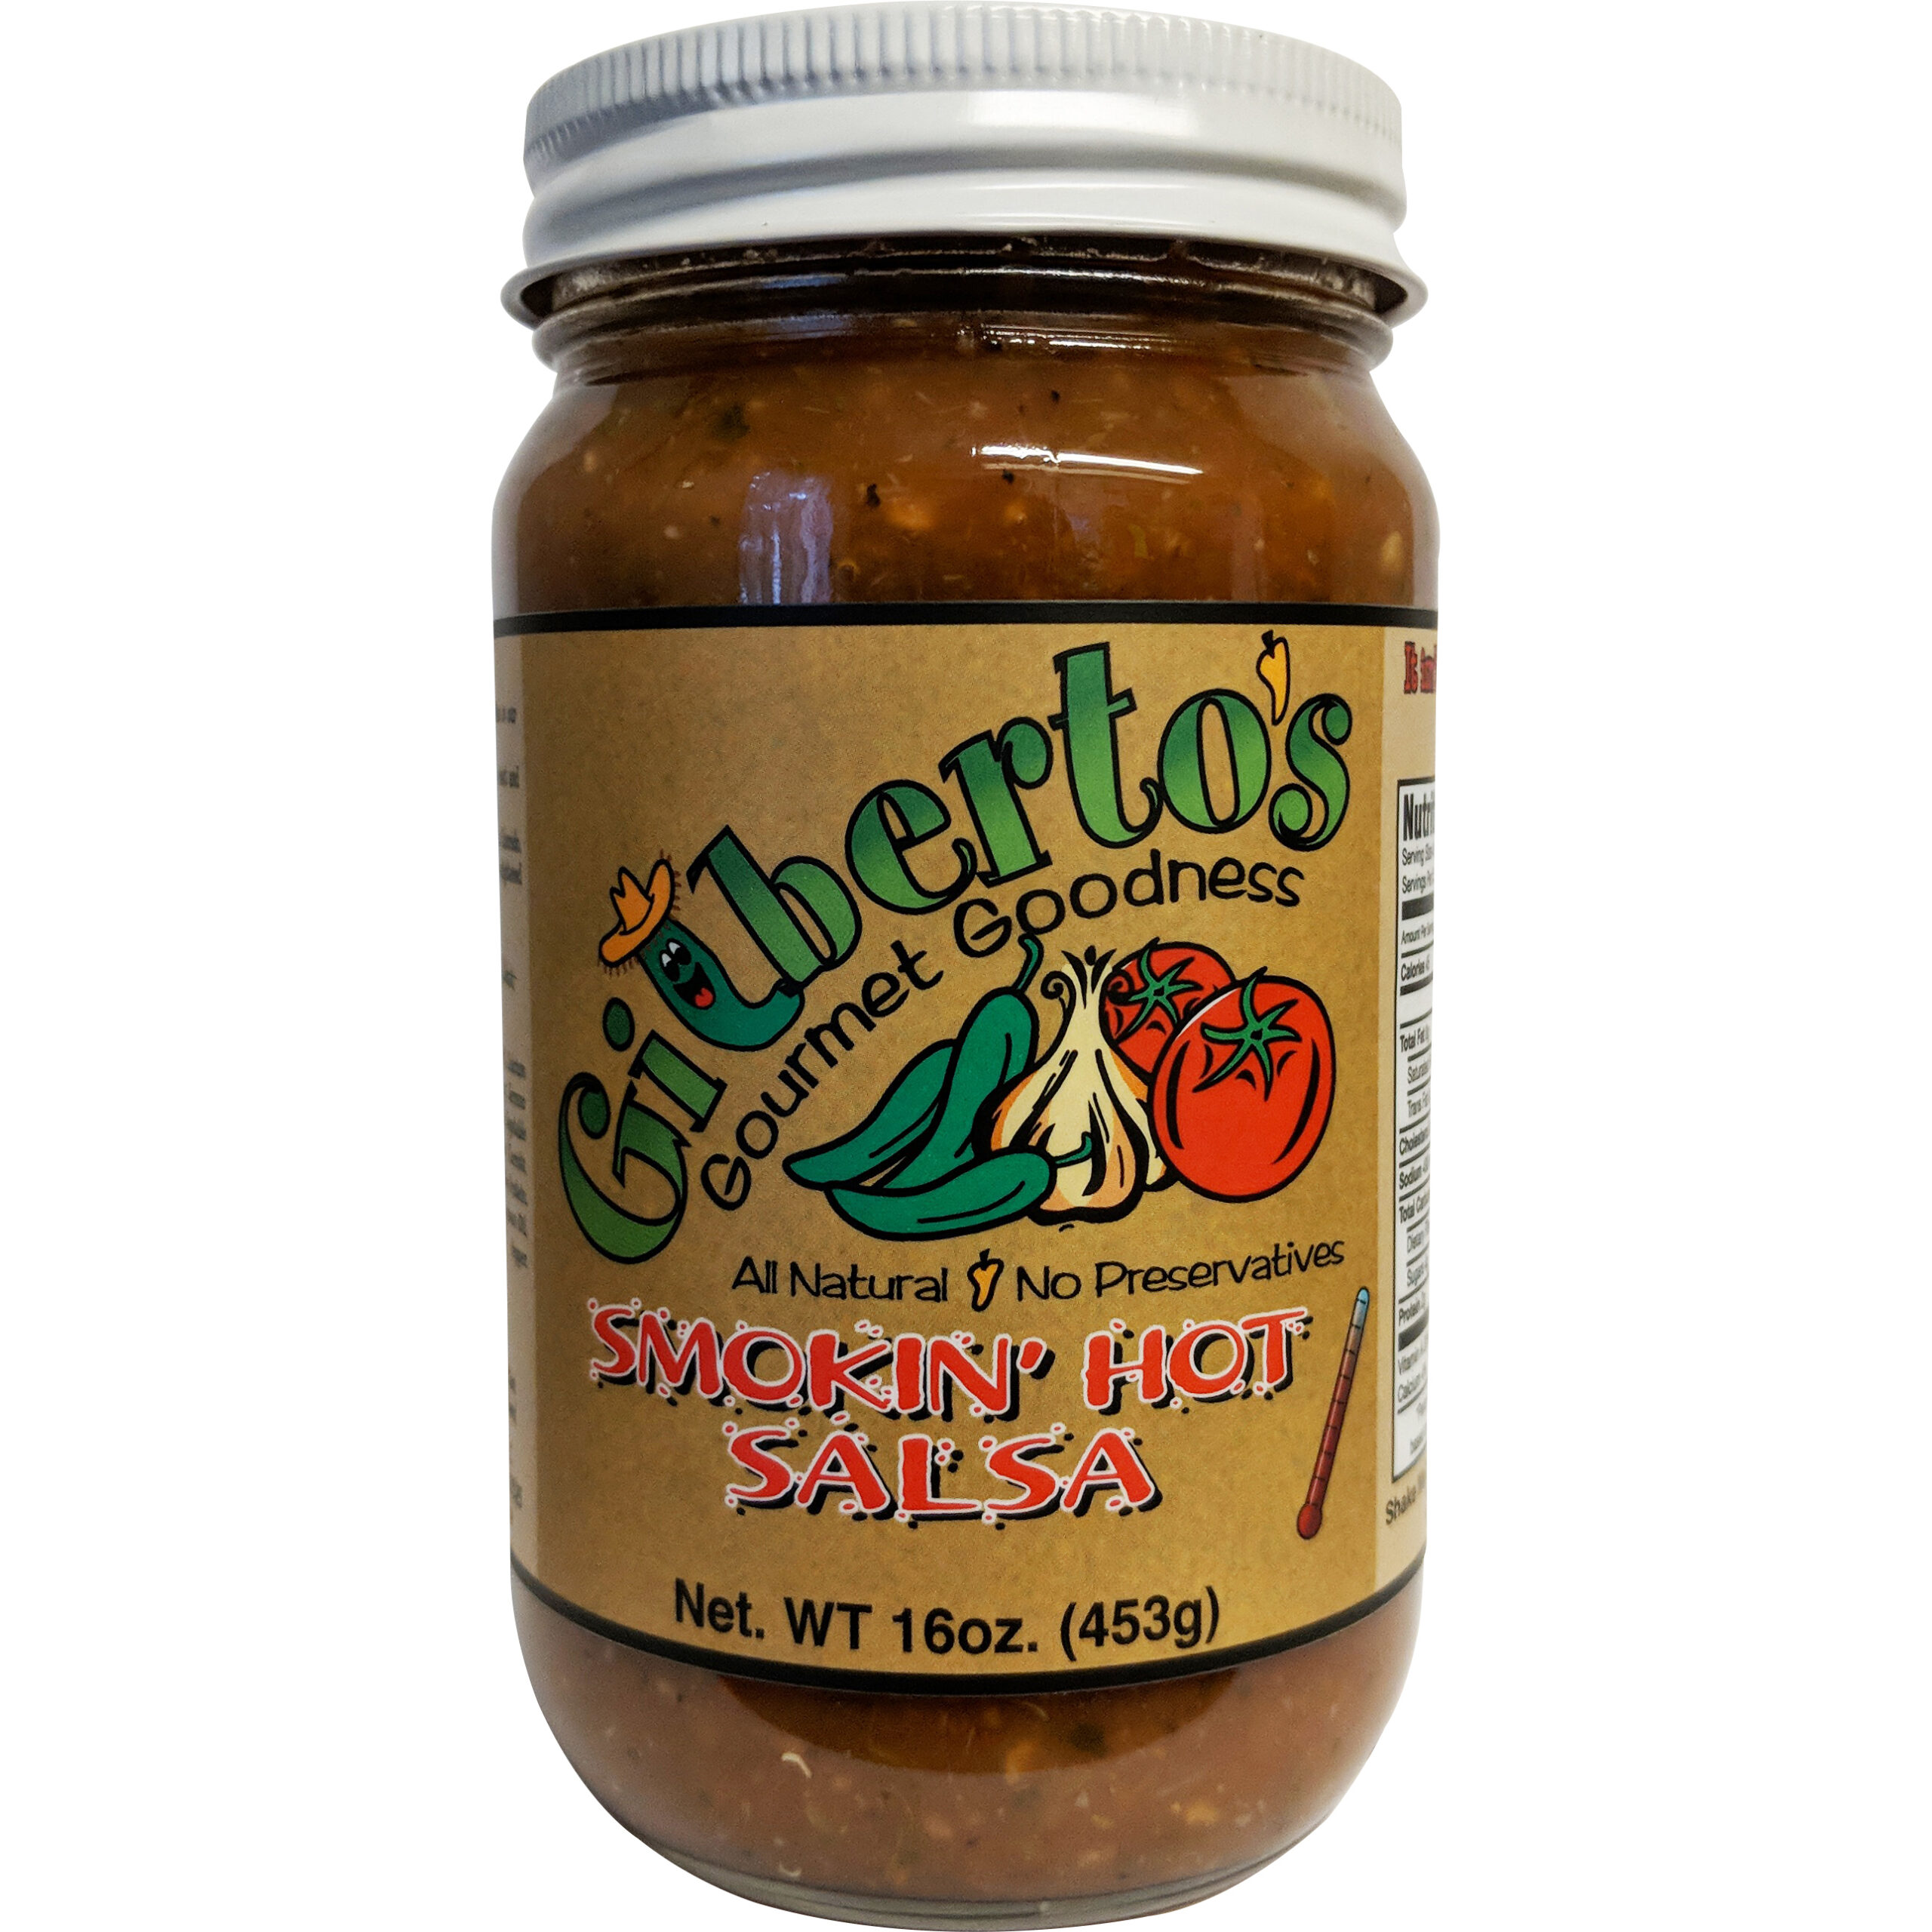 https://shop.silverstatefoods.com/wp-content/uploads/2018/10/Gilbertos-Smokin-Hot-Salsa-Clipped-scaled.jpg